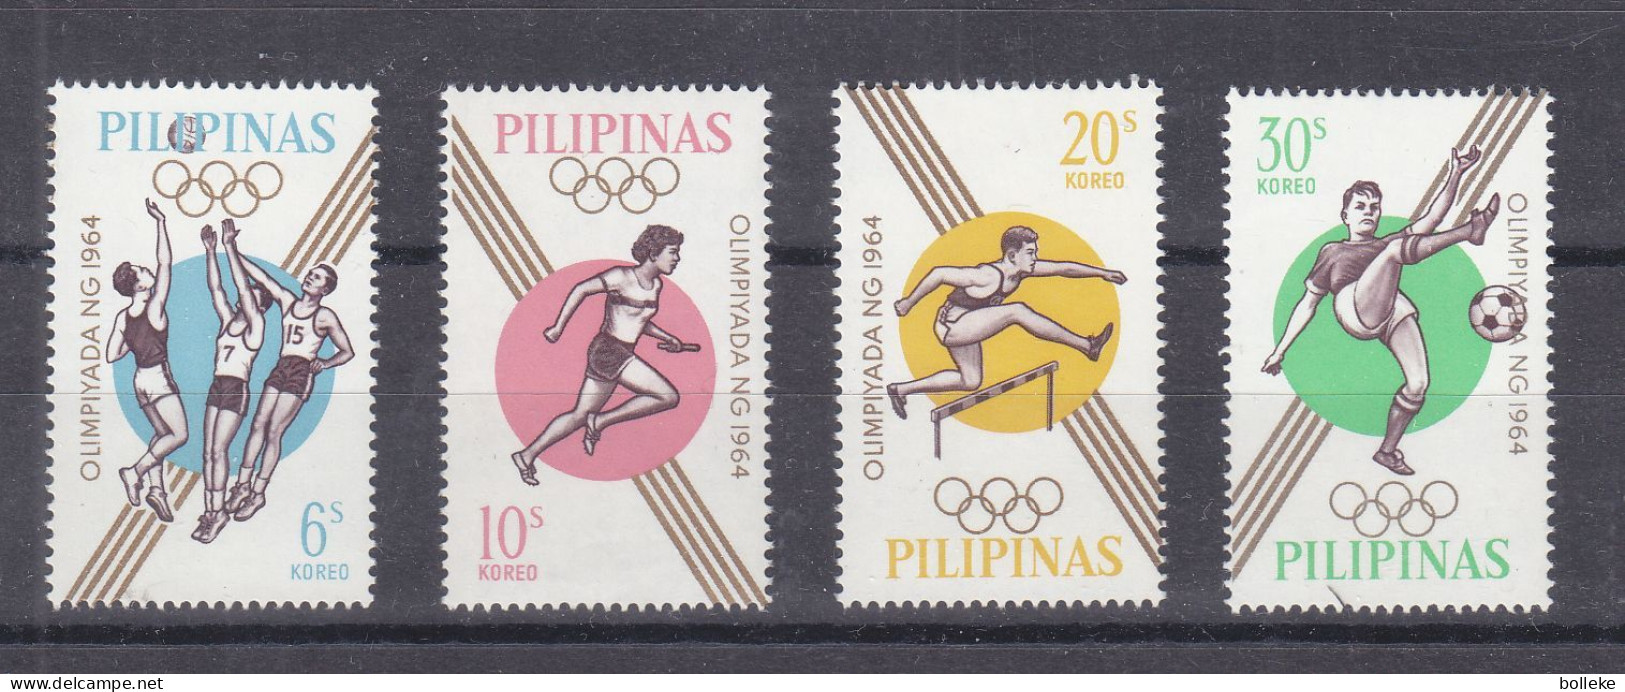 Jeux Oyimpiques - Tokyo 64 - Philippines - Yvert 605 / 8 ** -basket Ball - Haies - Football - Valeur 2,25 Euros - Sommer 1964: Tokio